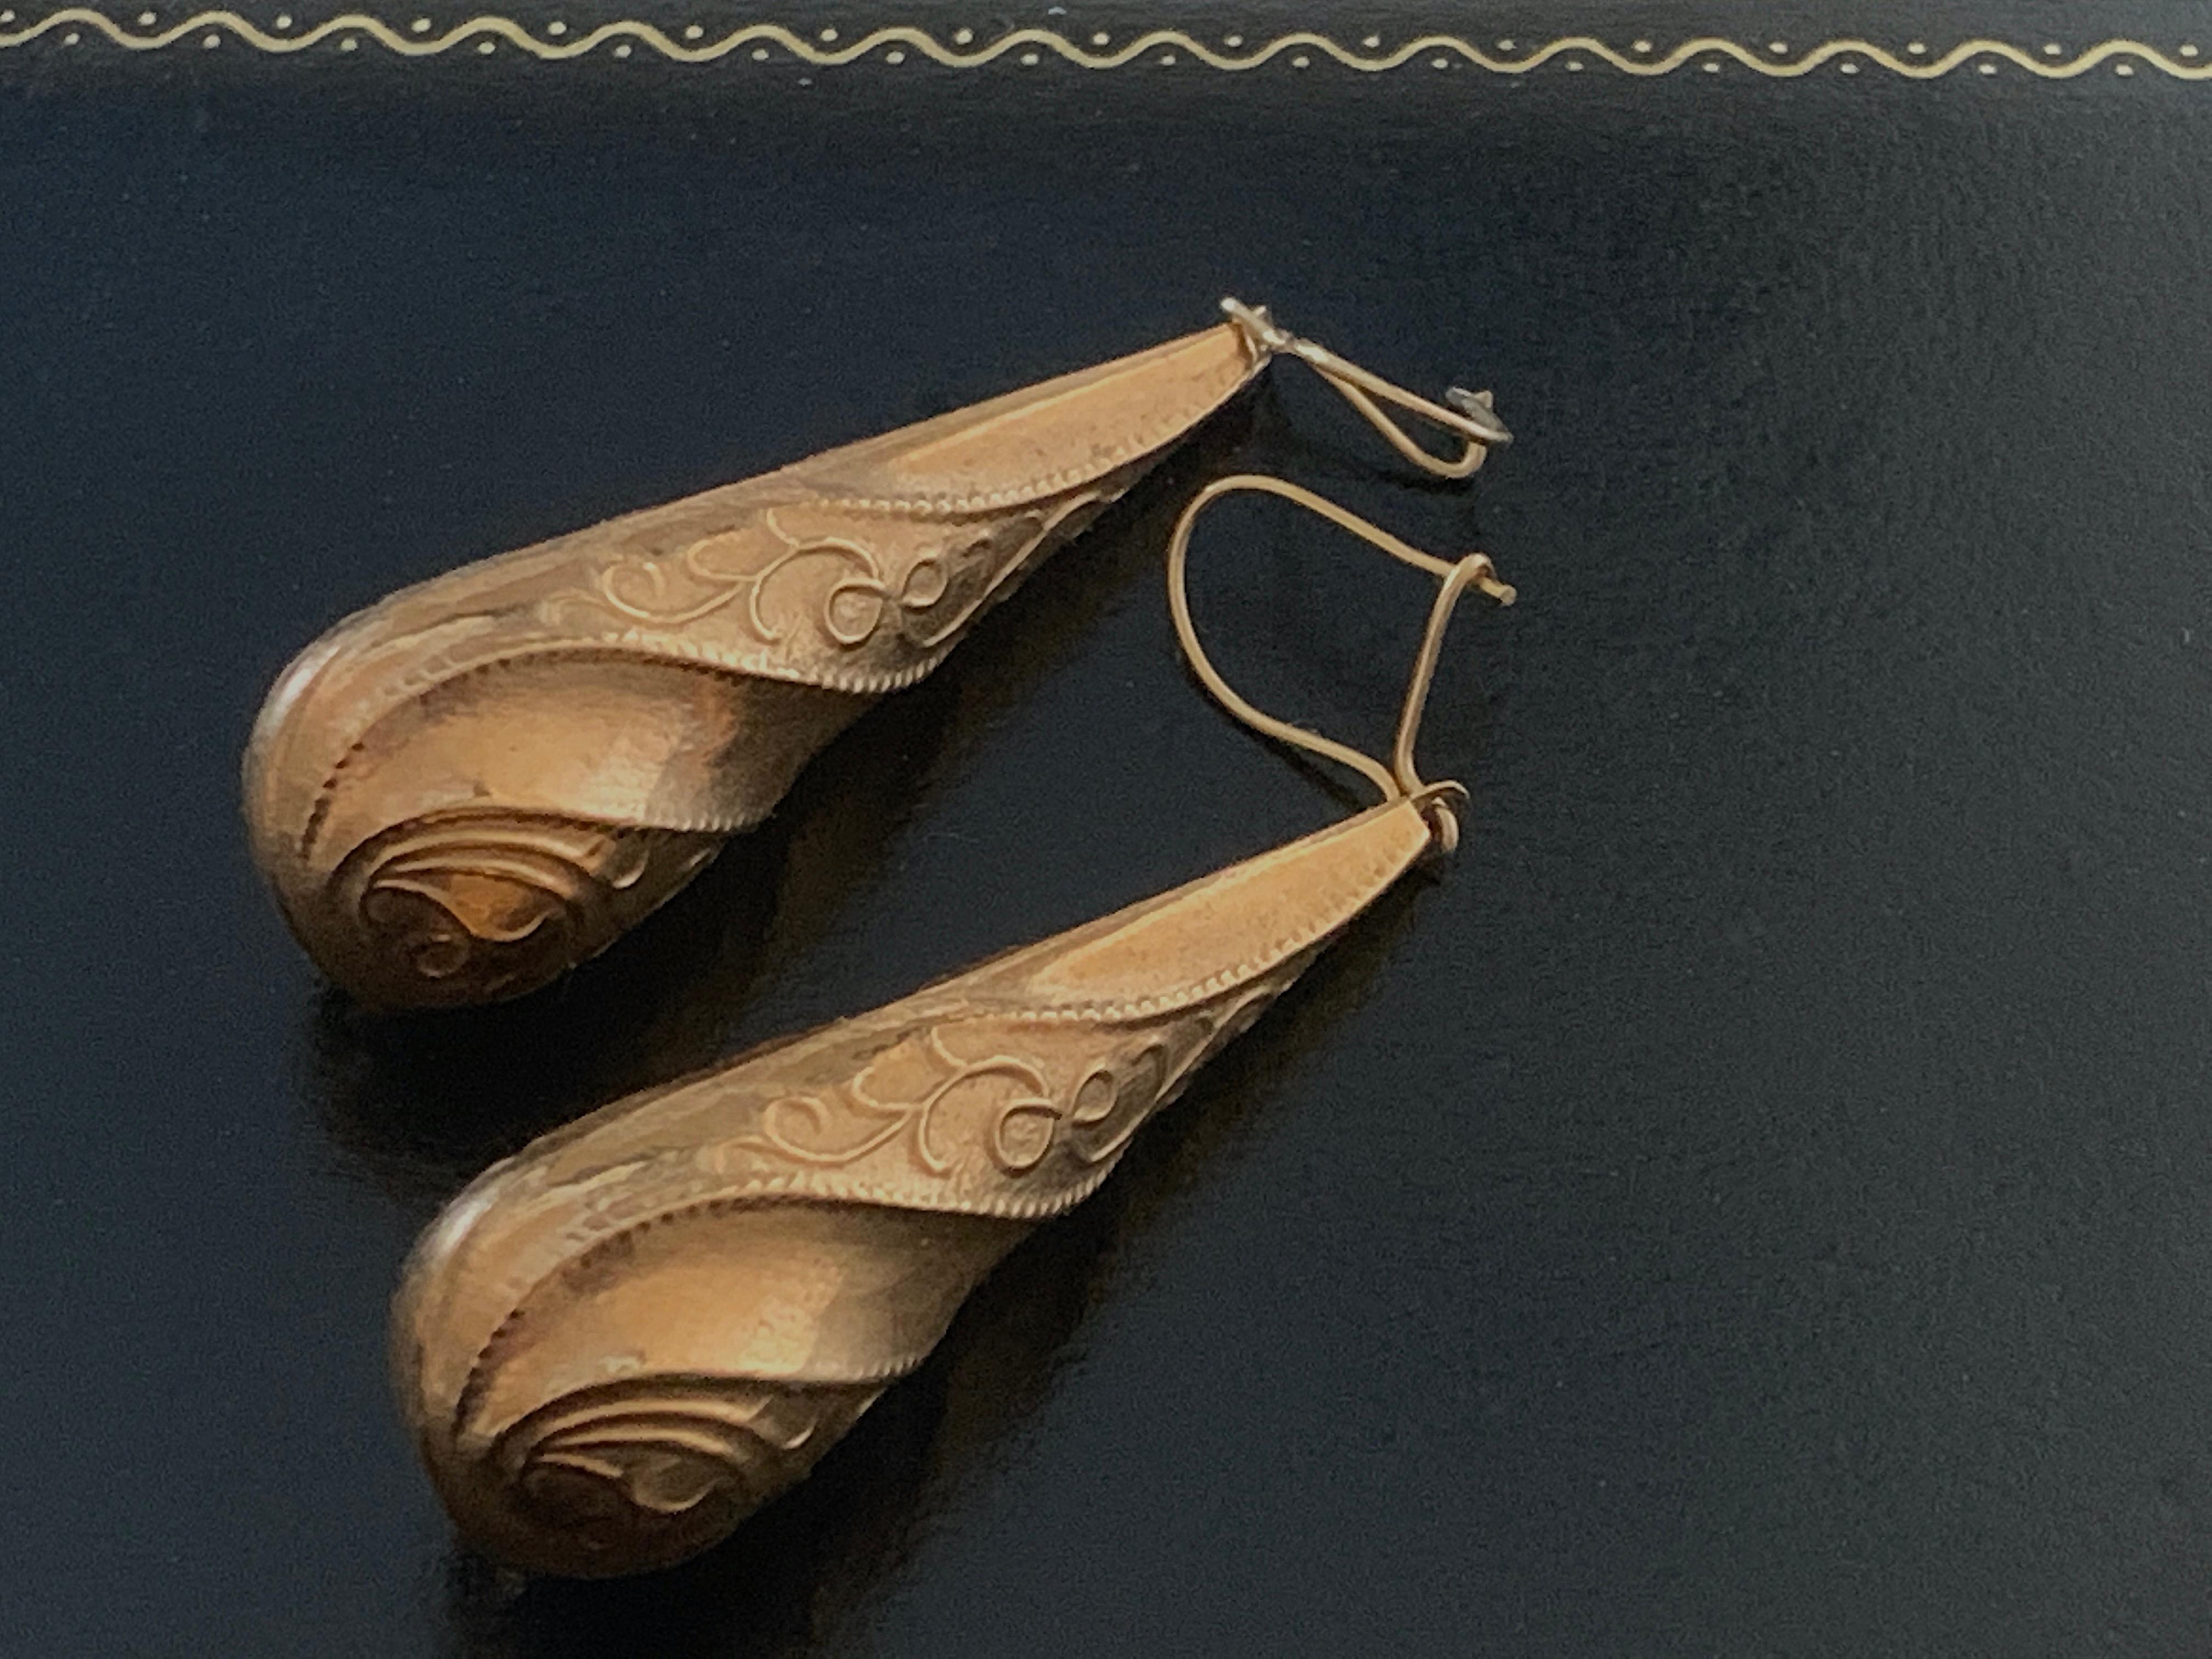 Wunderschönes antikes Gold ( Karat zwischen 9ct & 15ct )
Bomben-Ohrringe 
mit früheren gestempelten 9ct Verschlüssen

Die Bomben sind hohl 
und sind stark mit einem wirbelnden Muster verziert.
Diese werden aus zwei eingeprägten Hälften erstellt
die